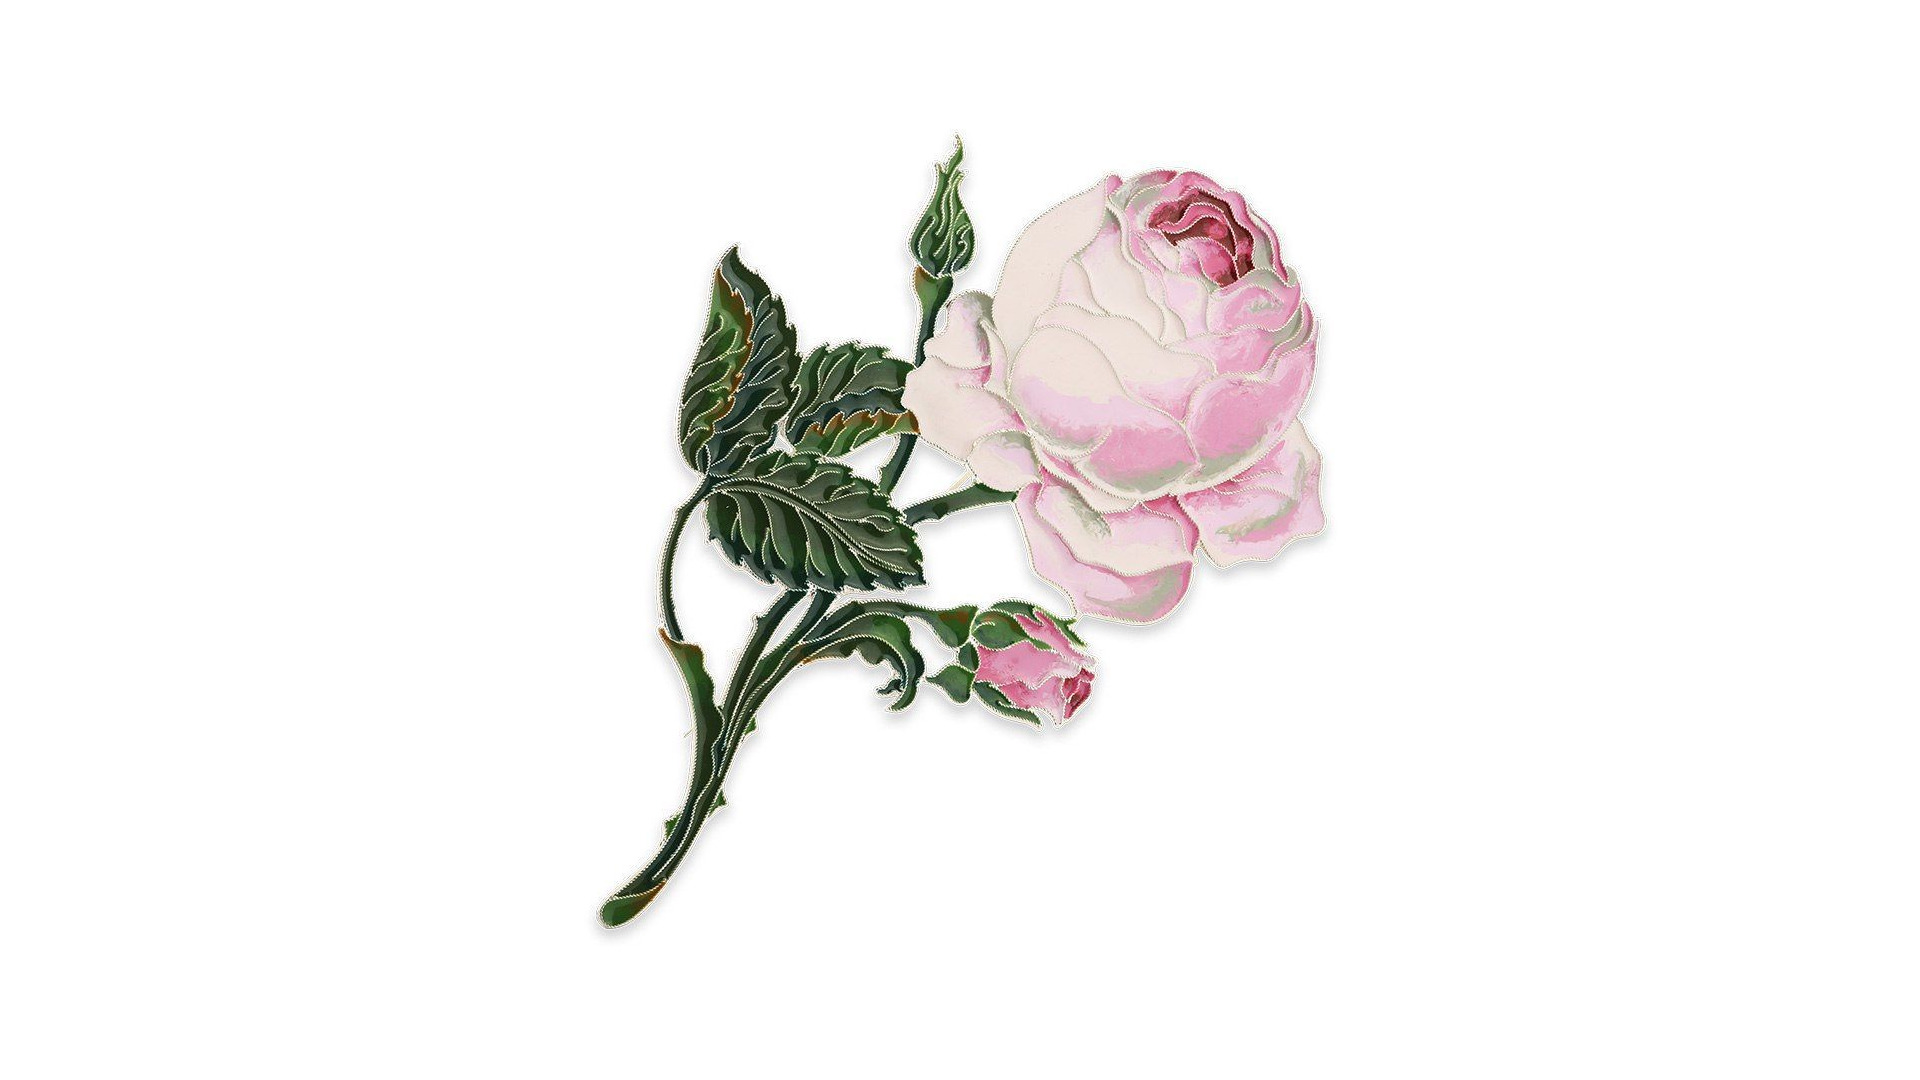 Брошь Русские самоцветы Розы Зимнего Дворца 67,88 г, серебро 925